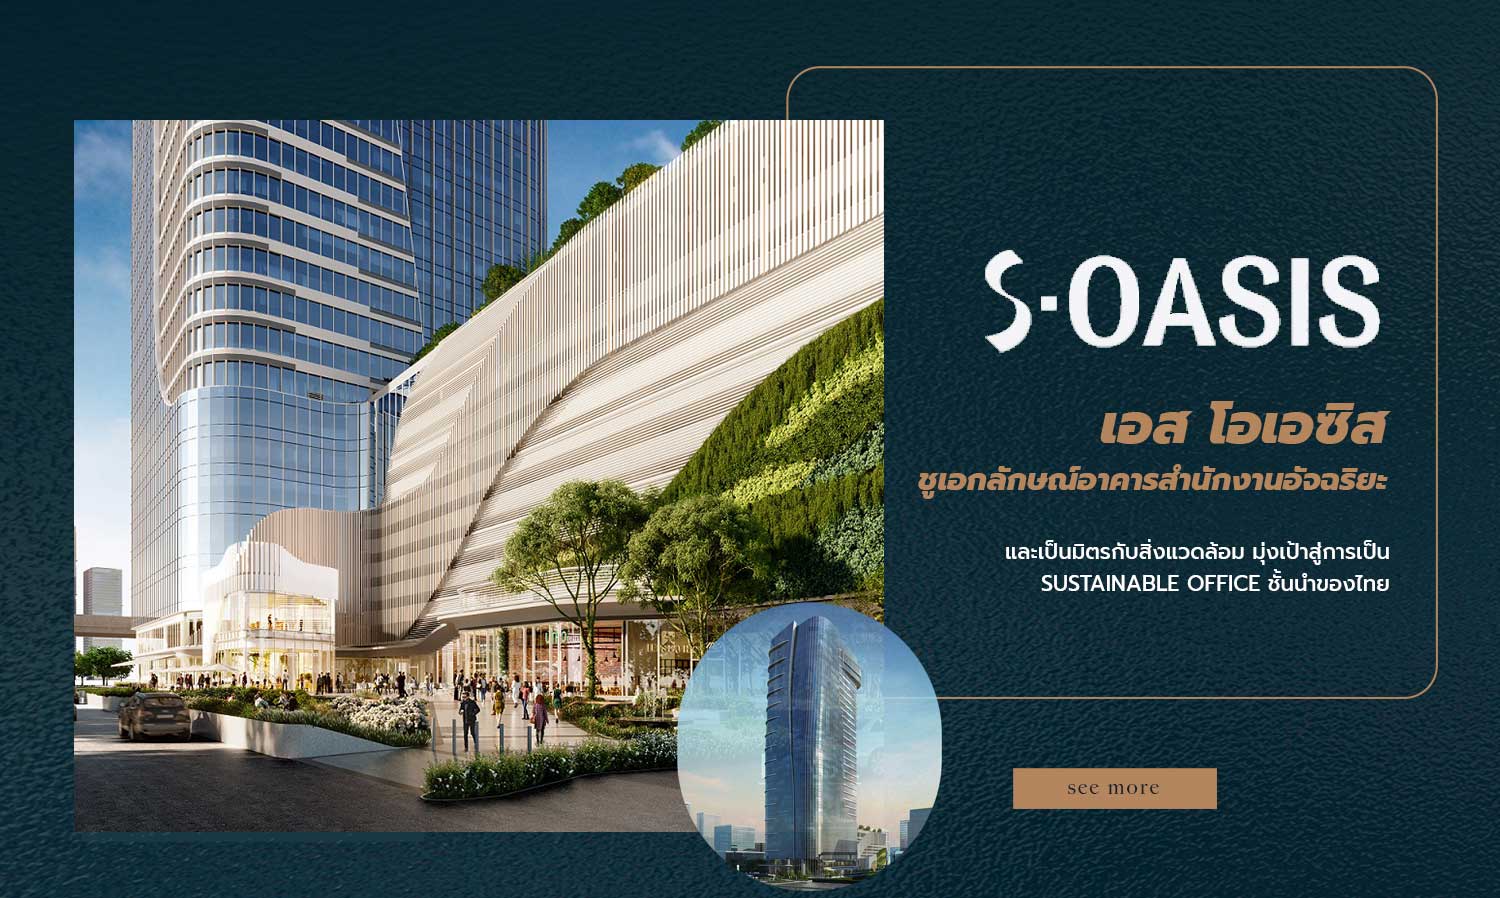 เอส โอเอซิส ชูเอกลักษณ์อาคารสำนักงานอัจฉริยะ และเป็นมิตรกับสิ่งแวดล้อม มุ่งเป้าสู่การเป็น Sustainable Office ชั้นนำของไทย